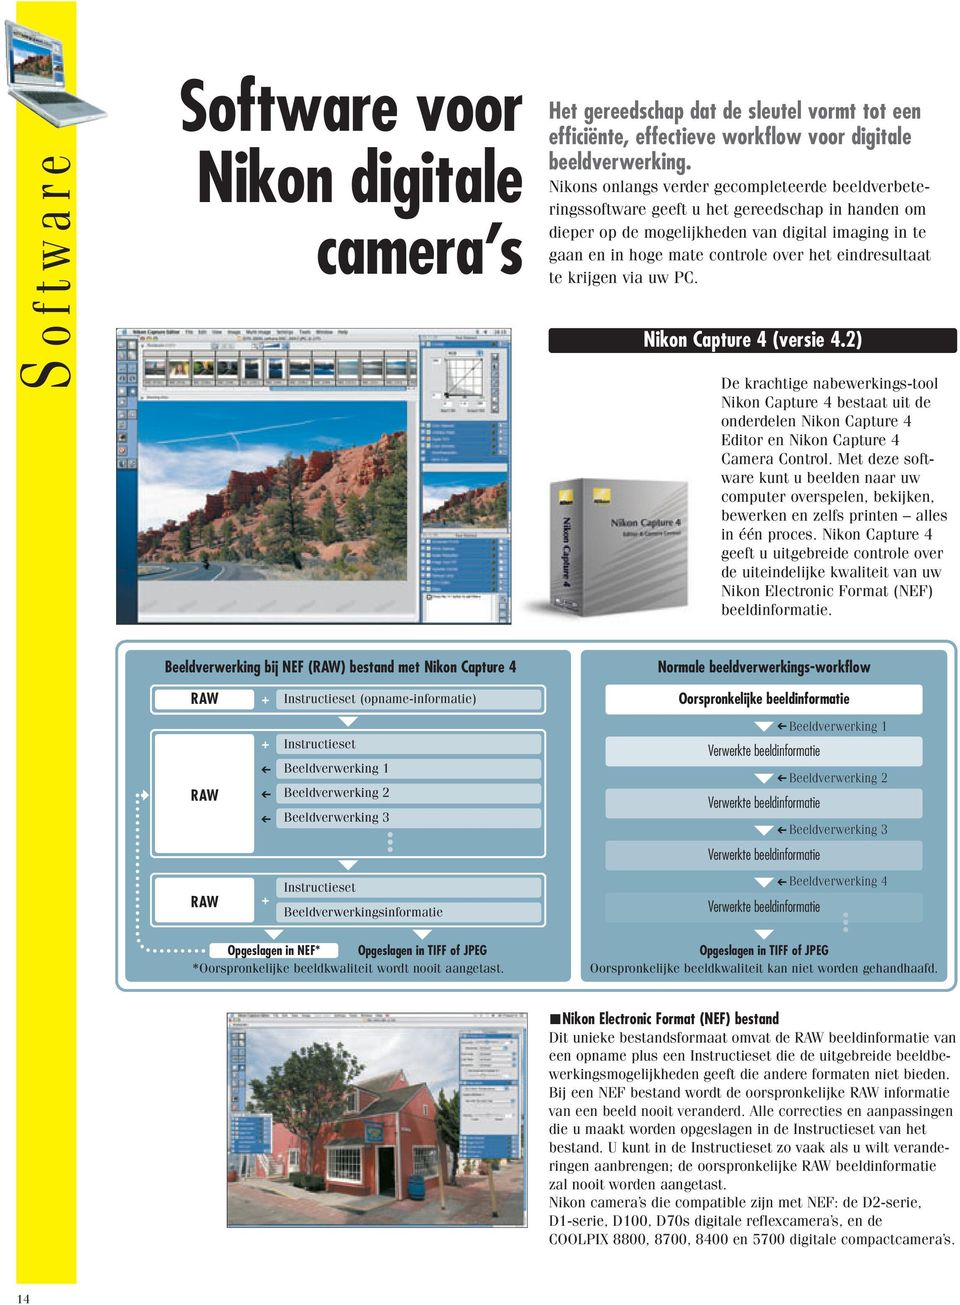 eindresultaat te krijgen via uw PC. Nikon Capture 4 (versie 4.2) De krachtige nabewerkings-tool Nikon Capture 4 bestaat uit de onderdelen Nikon Capture 4 Editor en Nikon Capture 4 Camera Control.